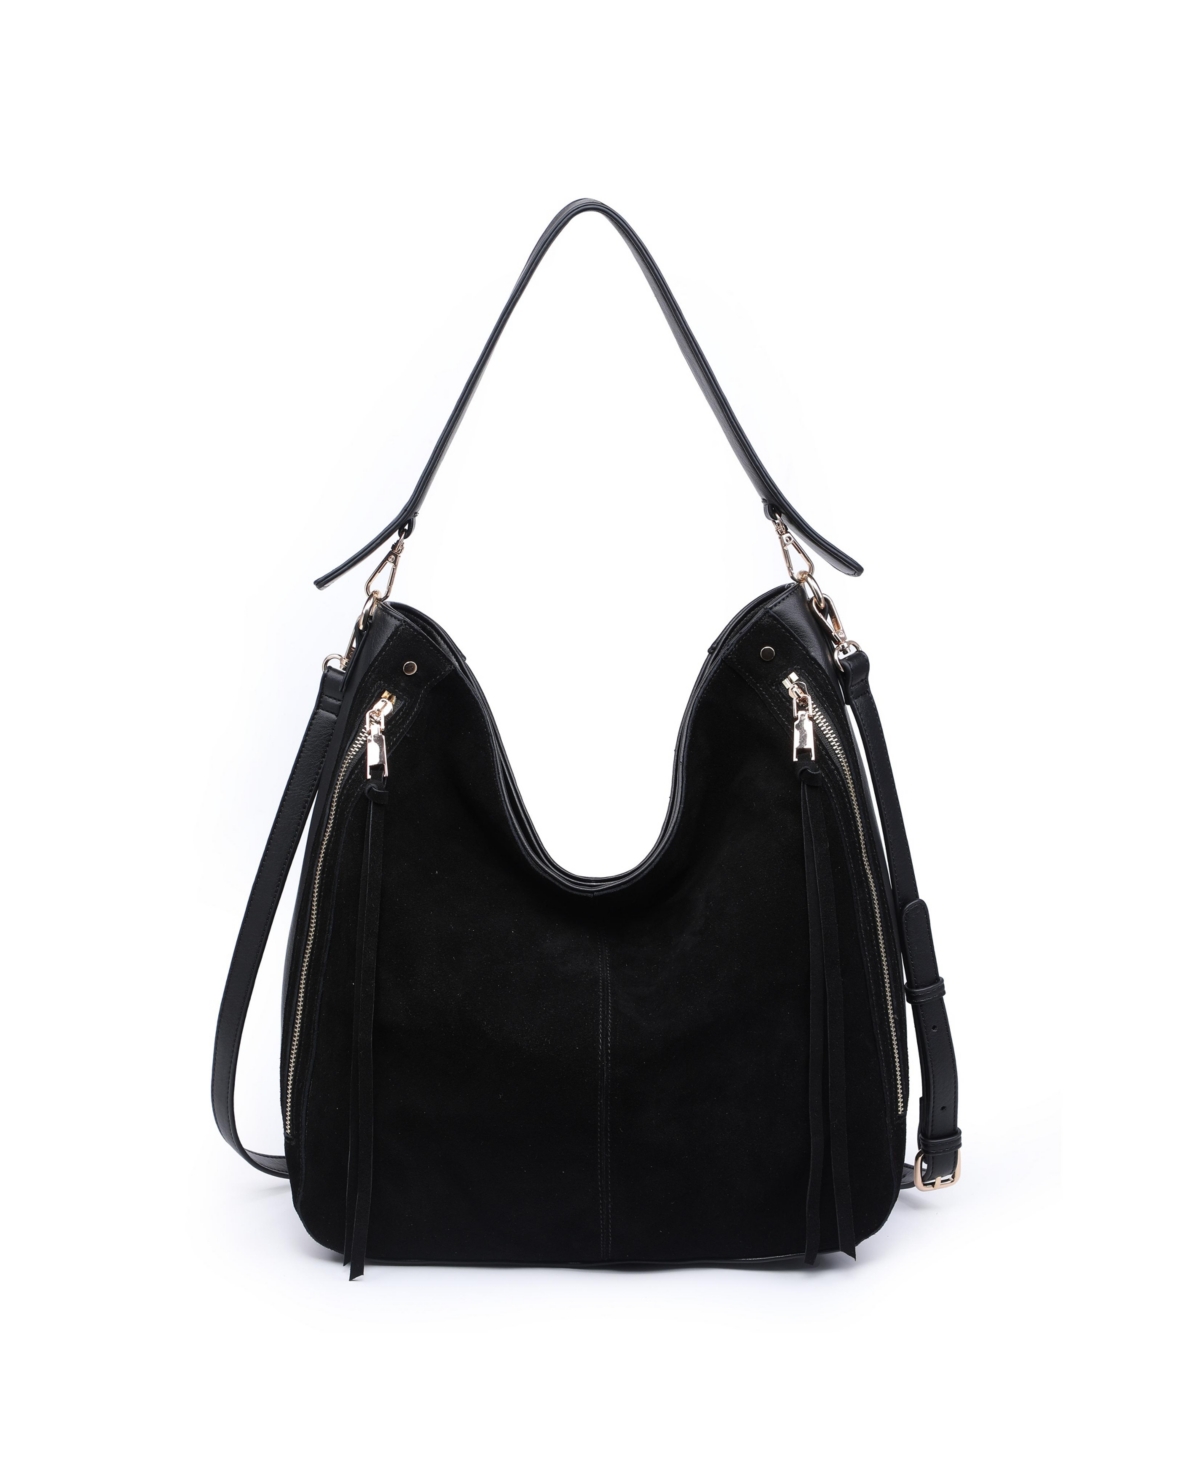 Moda Luxe Heidi Medium Hobo Bag In Black